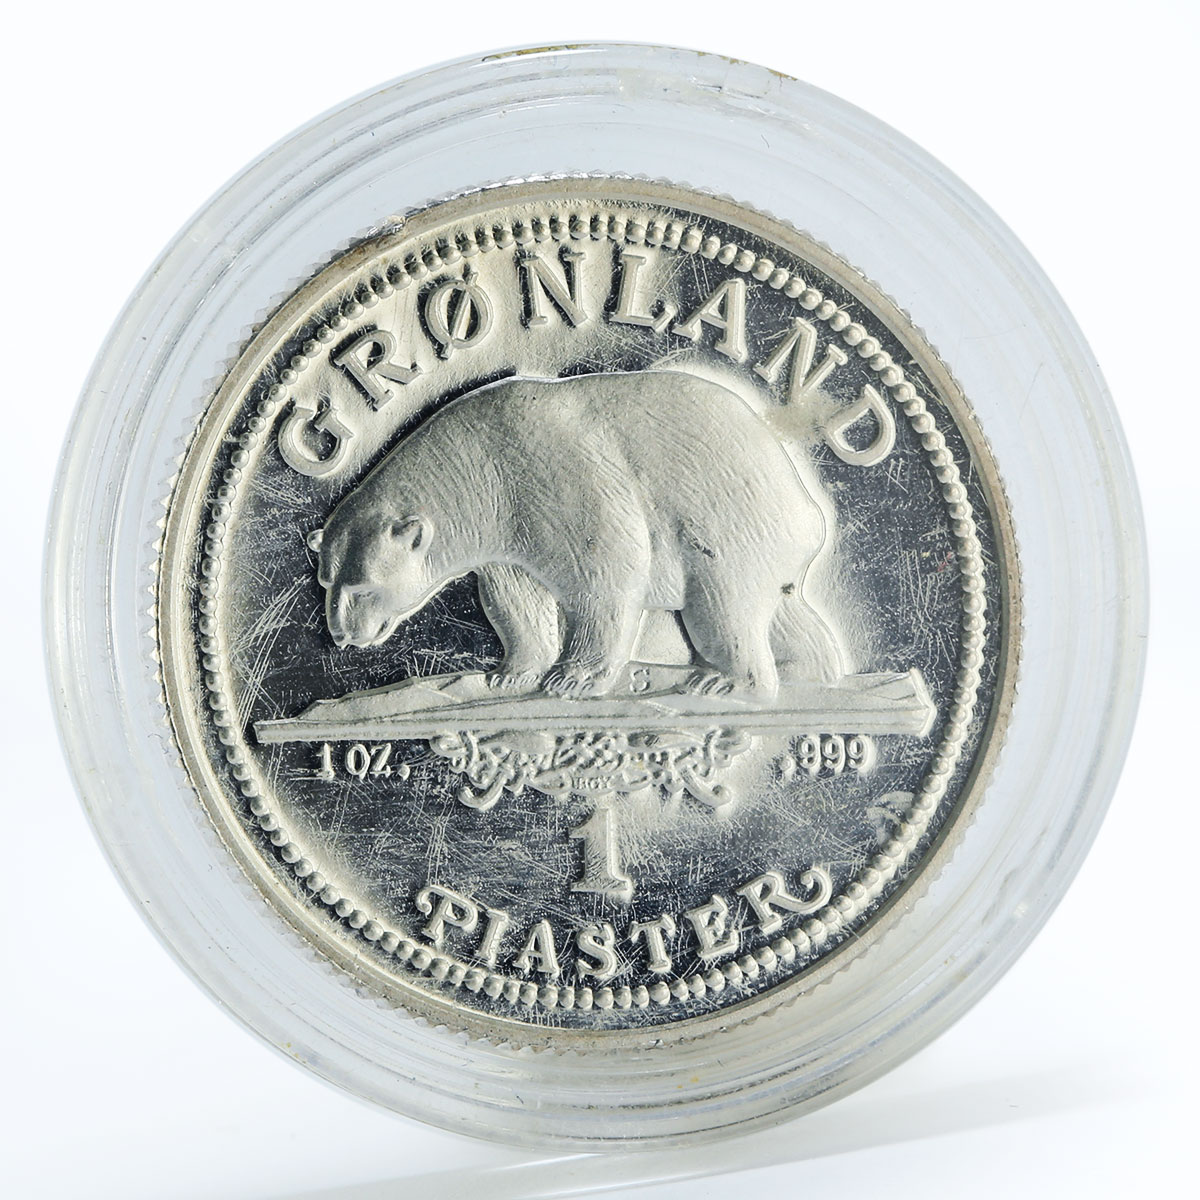 Denmark 1 piaster Greenland Polar Bear proof silver coin 1989